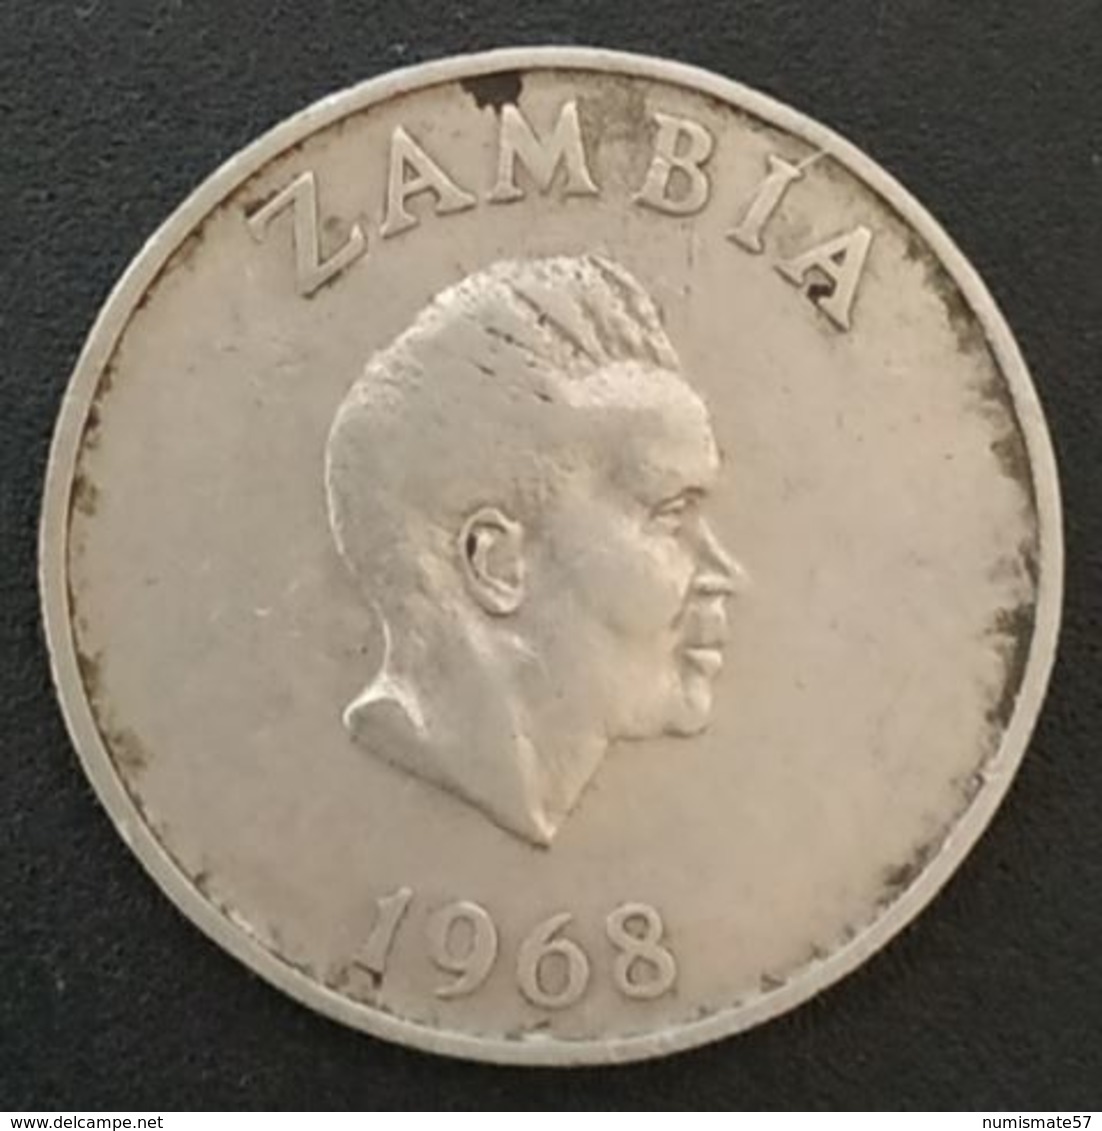 ZAMBIE - ZAMBIA - 10 - TEN NGWEE 1968 - KM 12 - Calao Couronné - Zambia